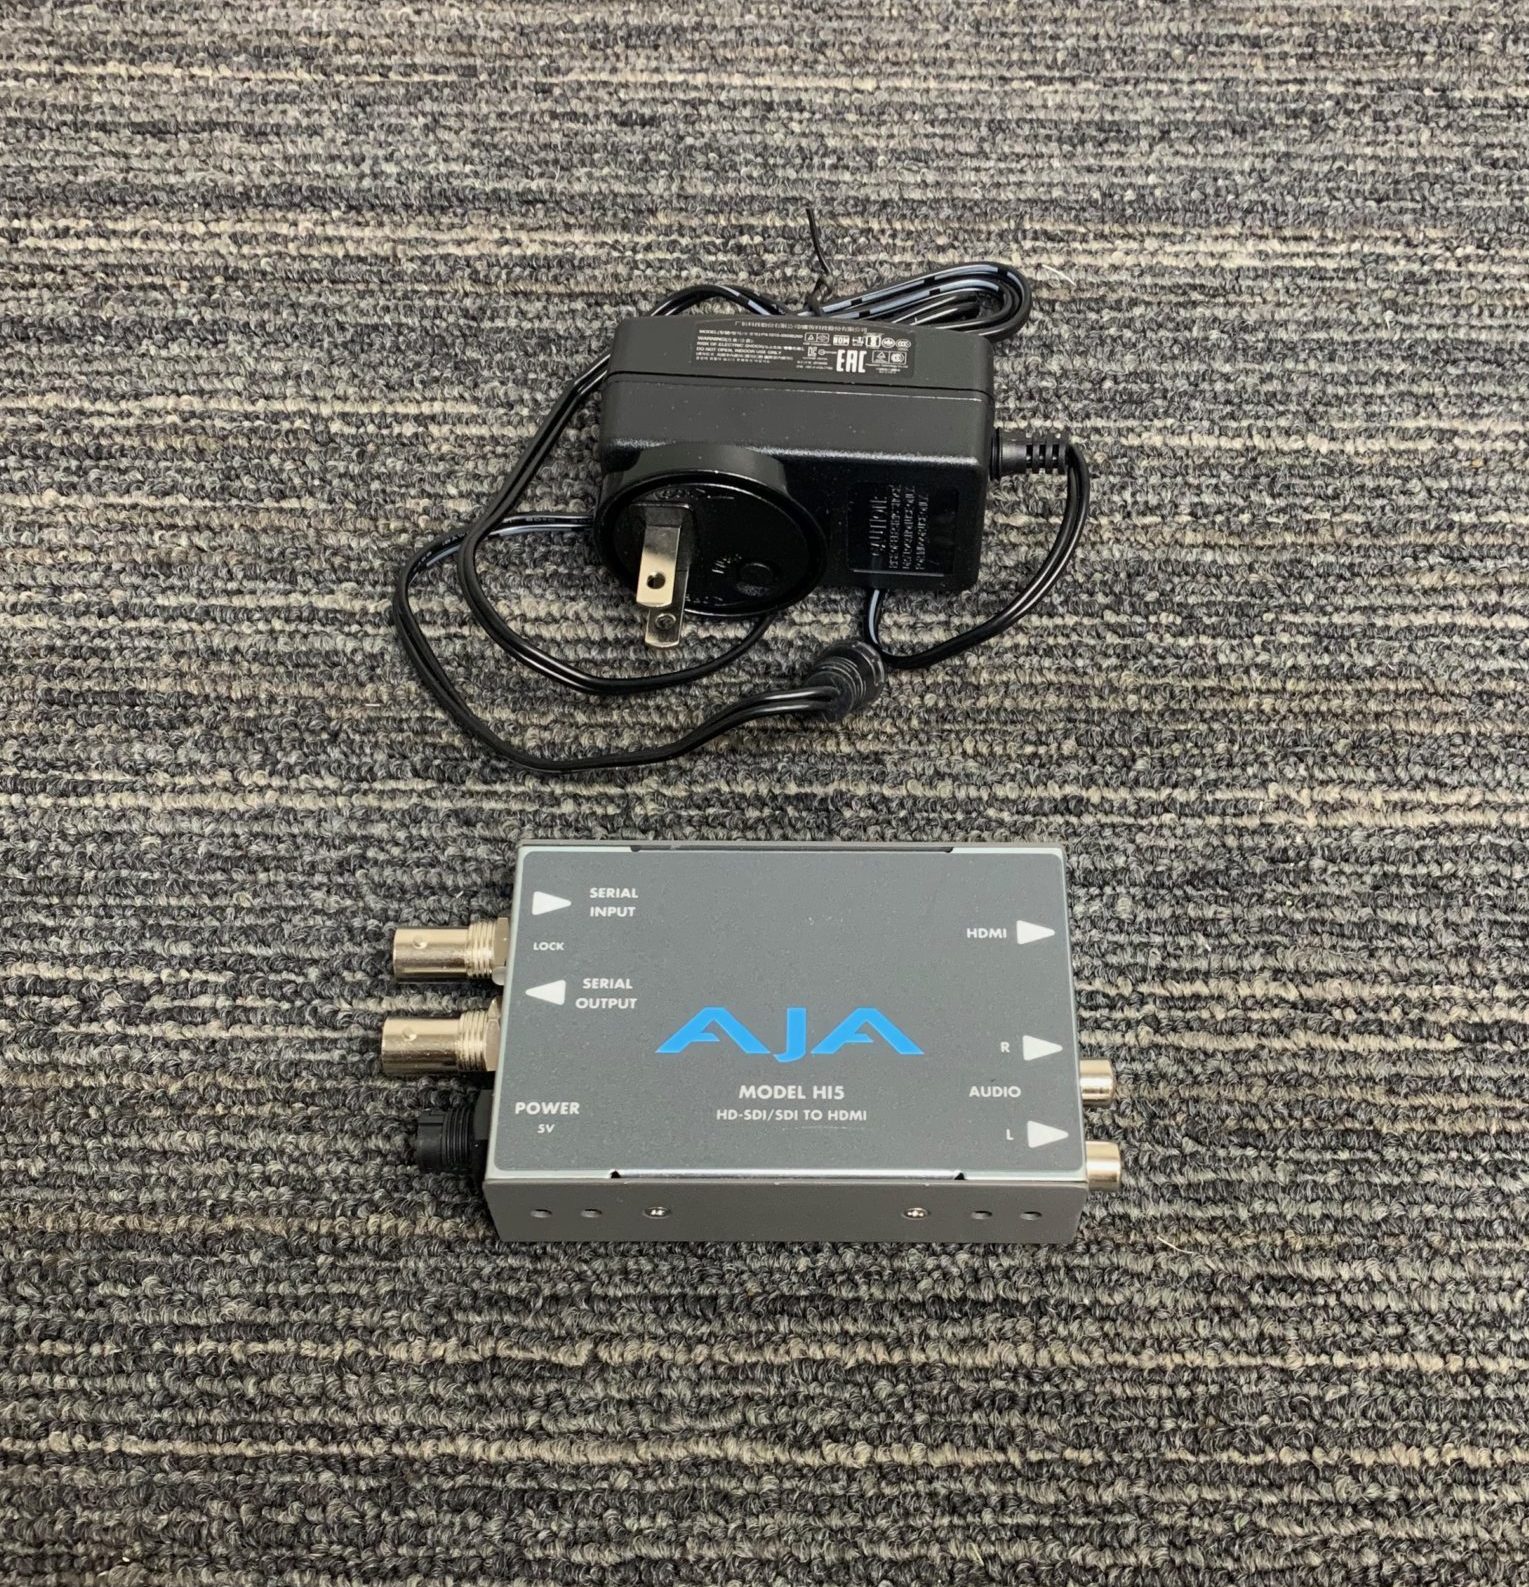 AJA Hi5-RO HD-SDI/SDI to HDMI Video and Audio Converter- USED 